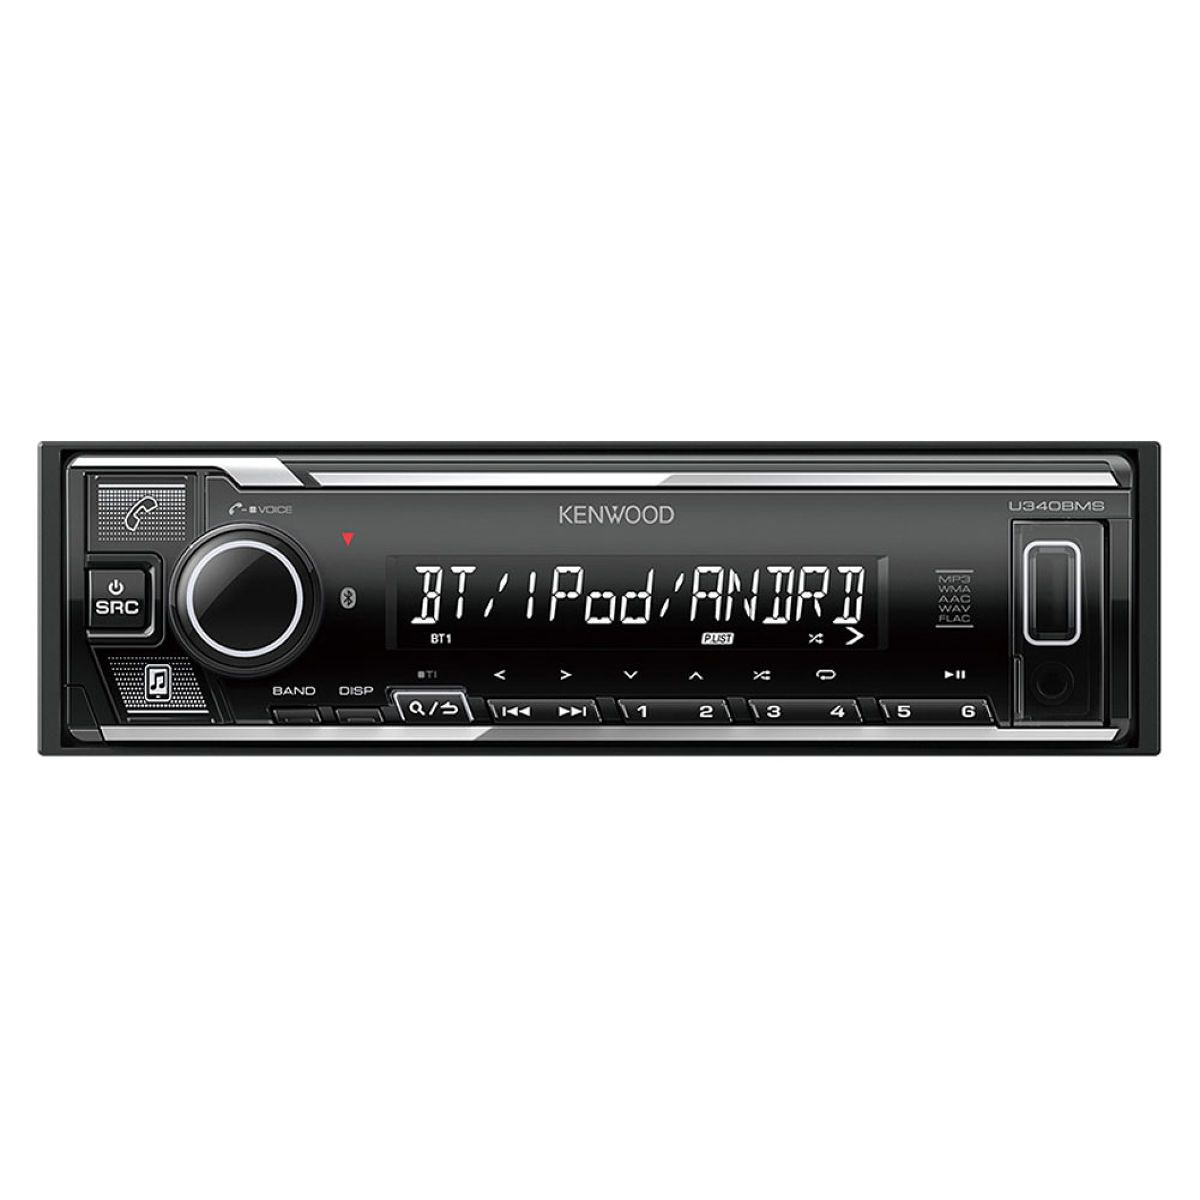 KENWOOD U340BMS USB iPod Bluetoothレシーバー MP3 WMA AAC WAV FLAC対応